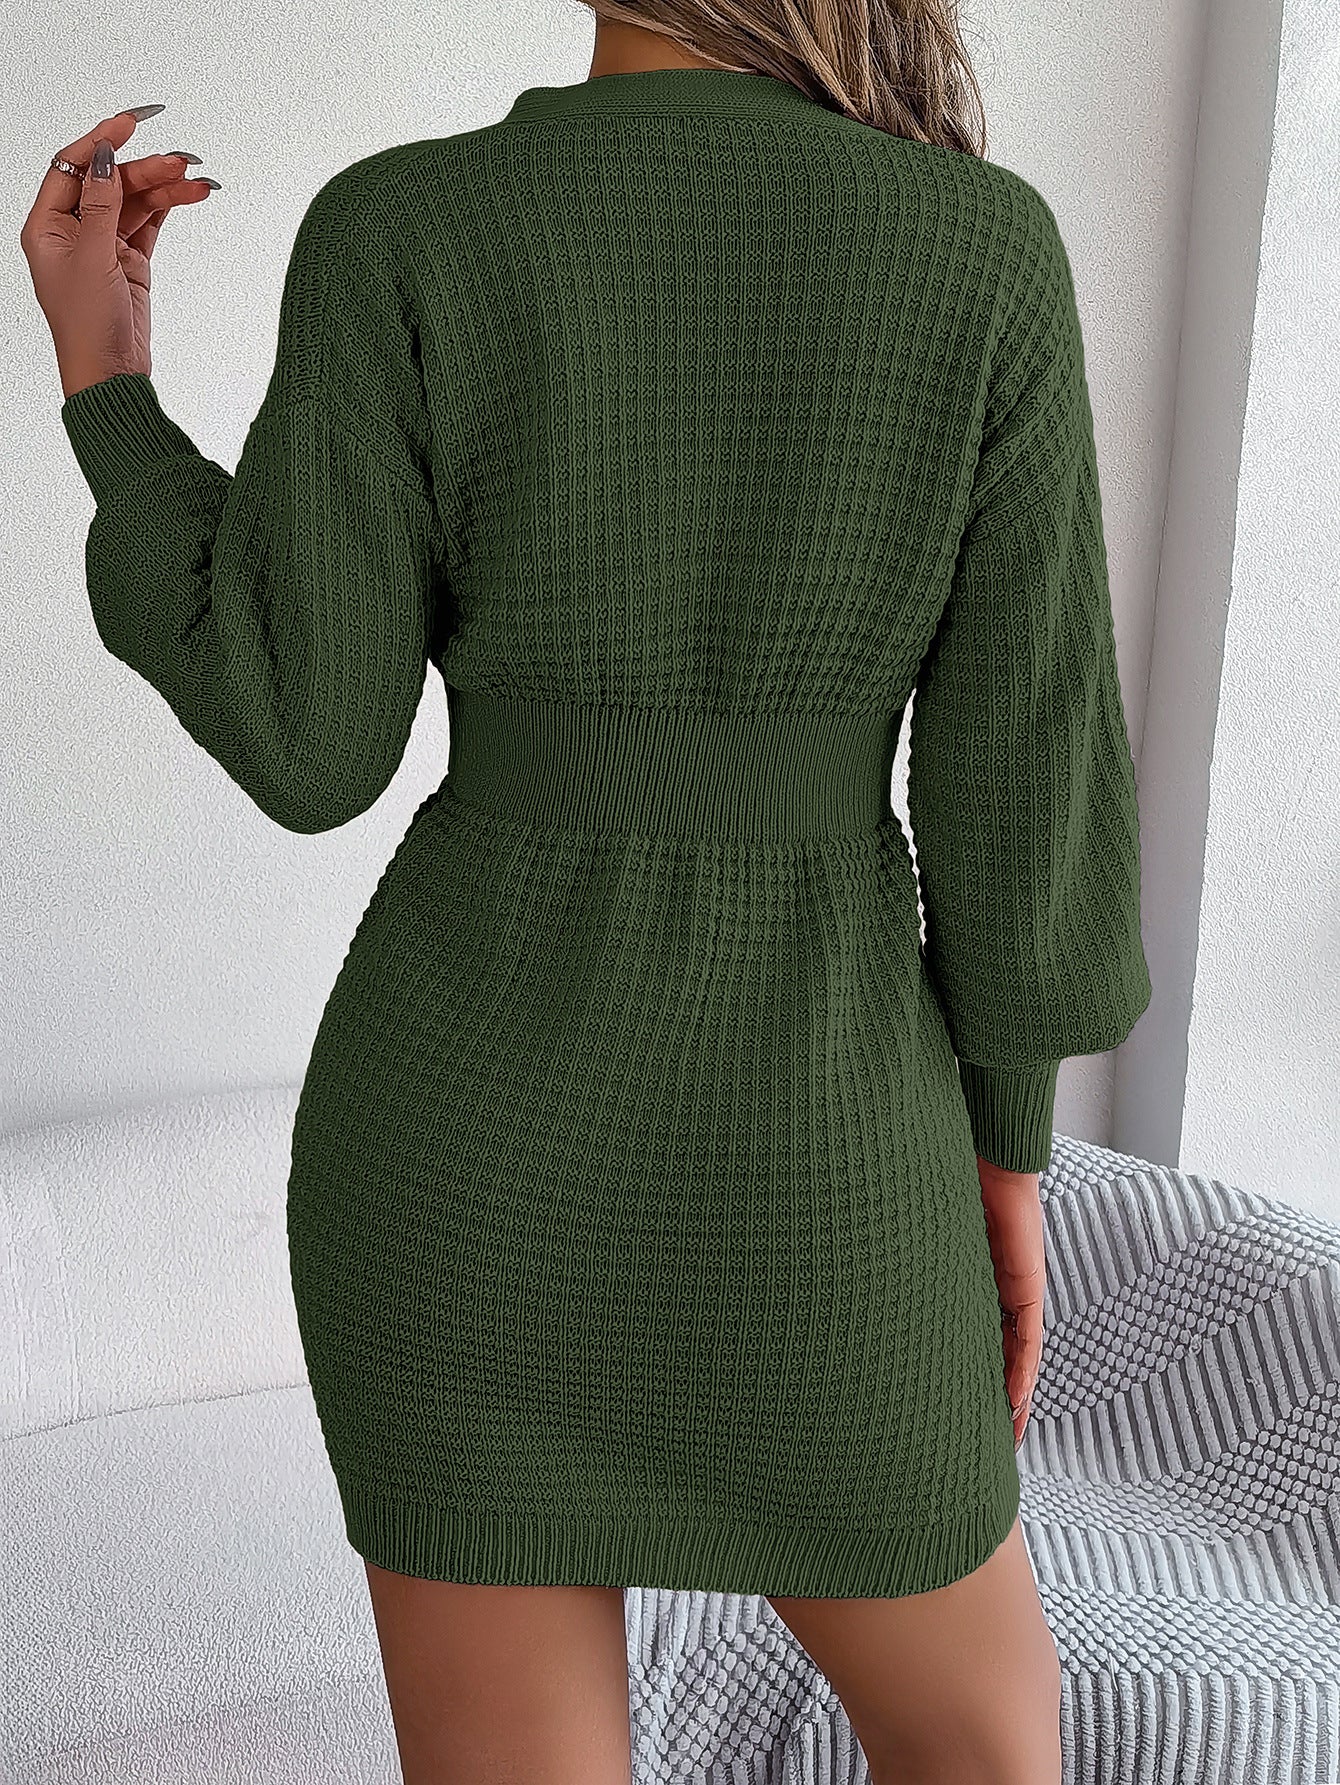 Waisted v-neck long sleeve sweater dress for women